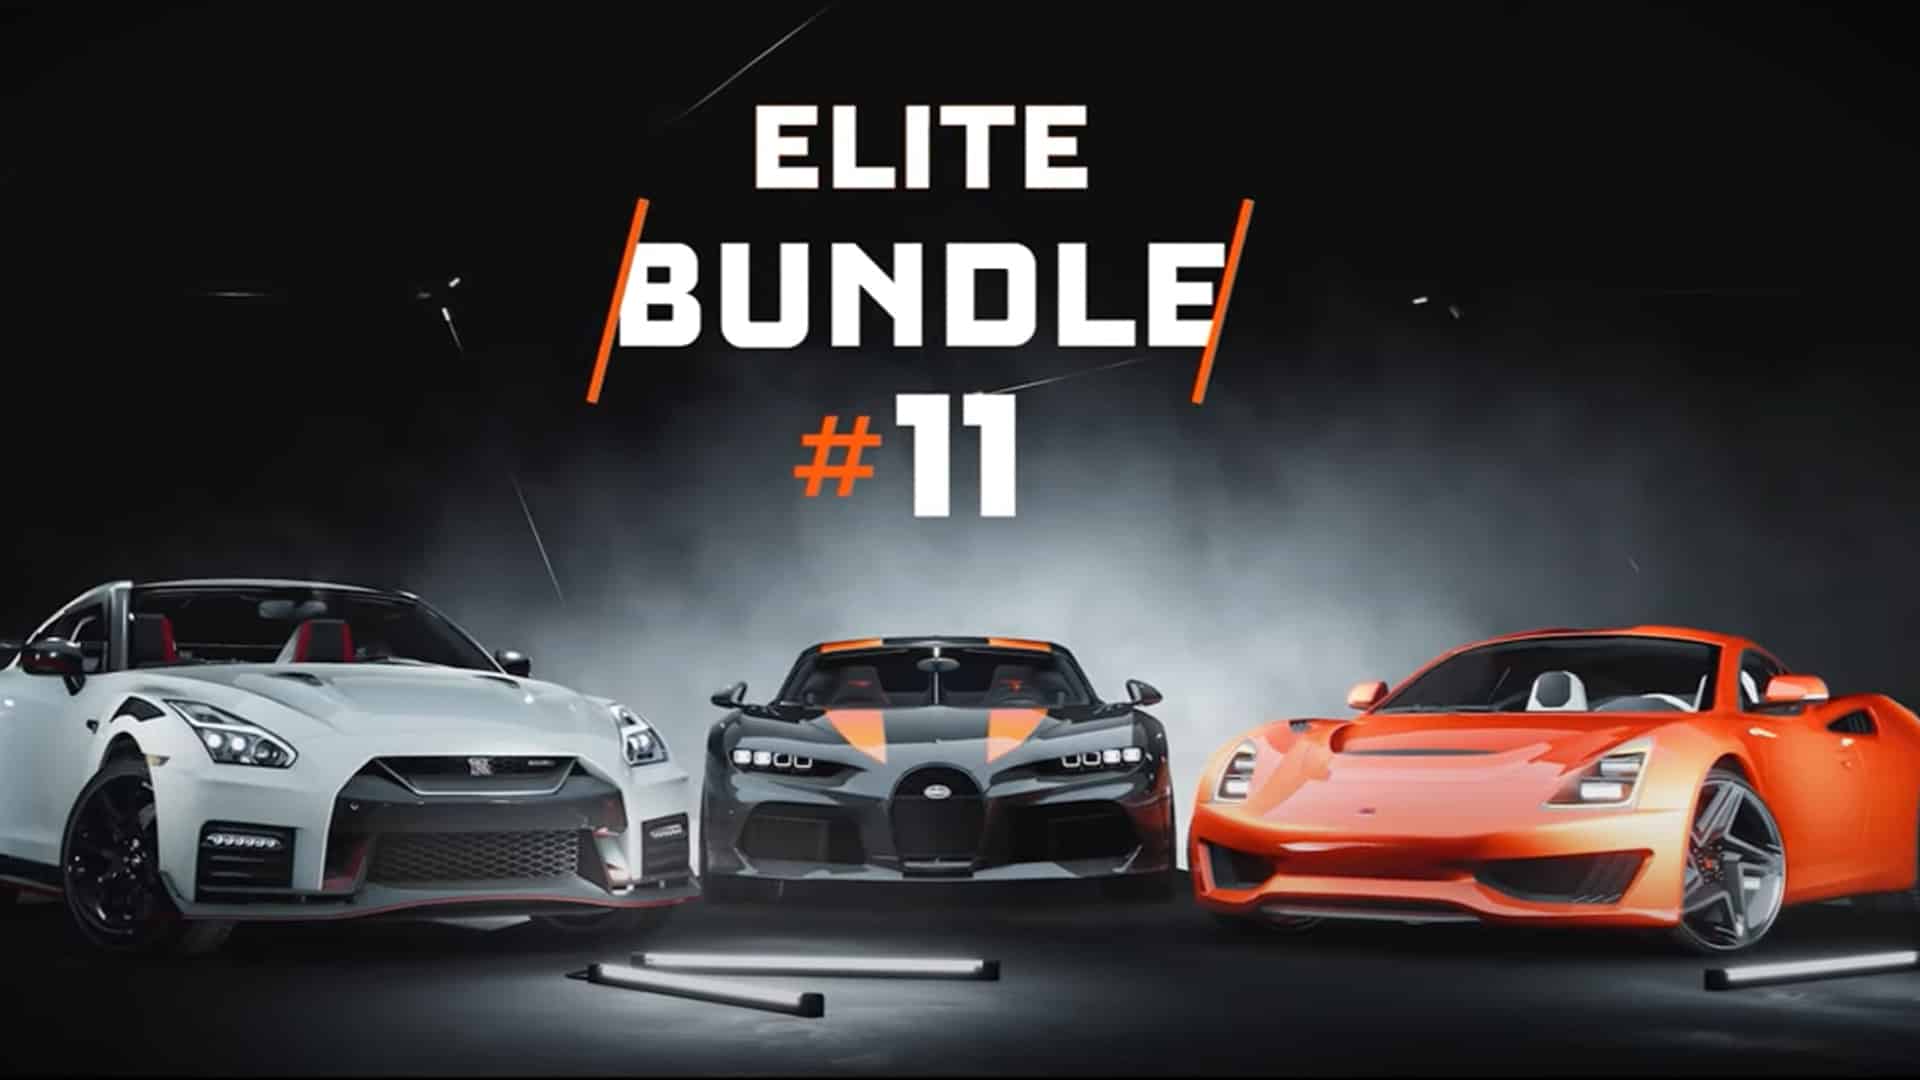 The Crew 2 Elite Bundle 11 impresses with Bugatti Chiron Super